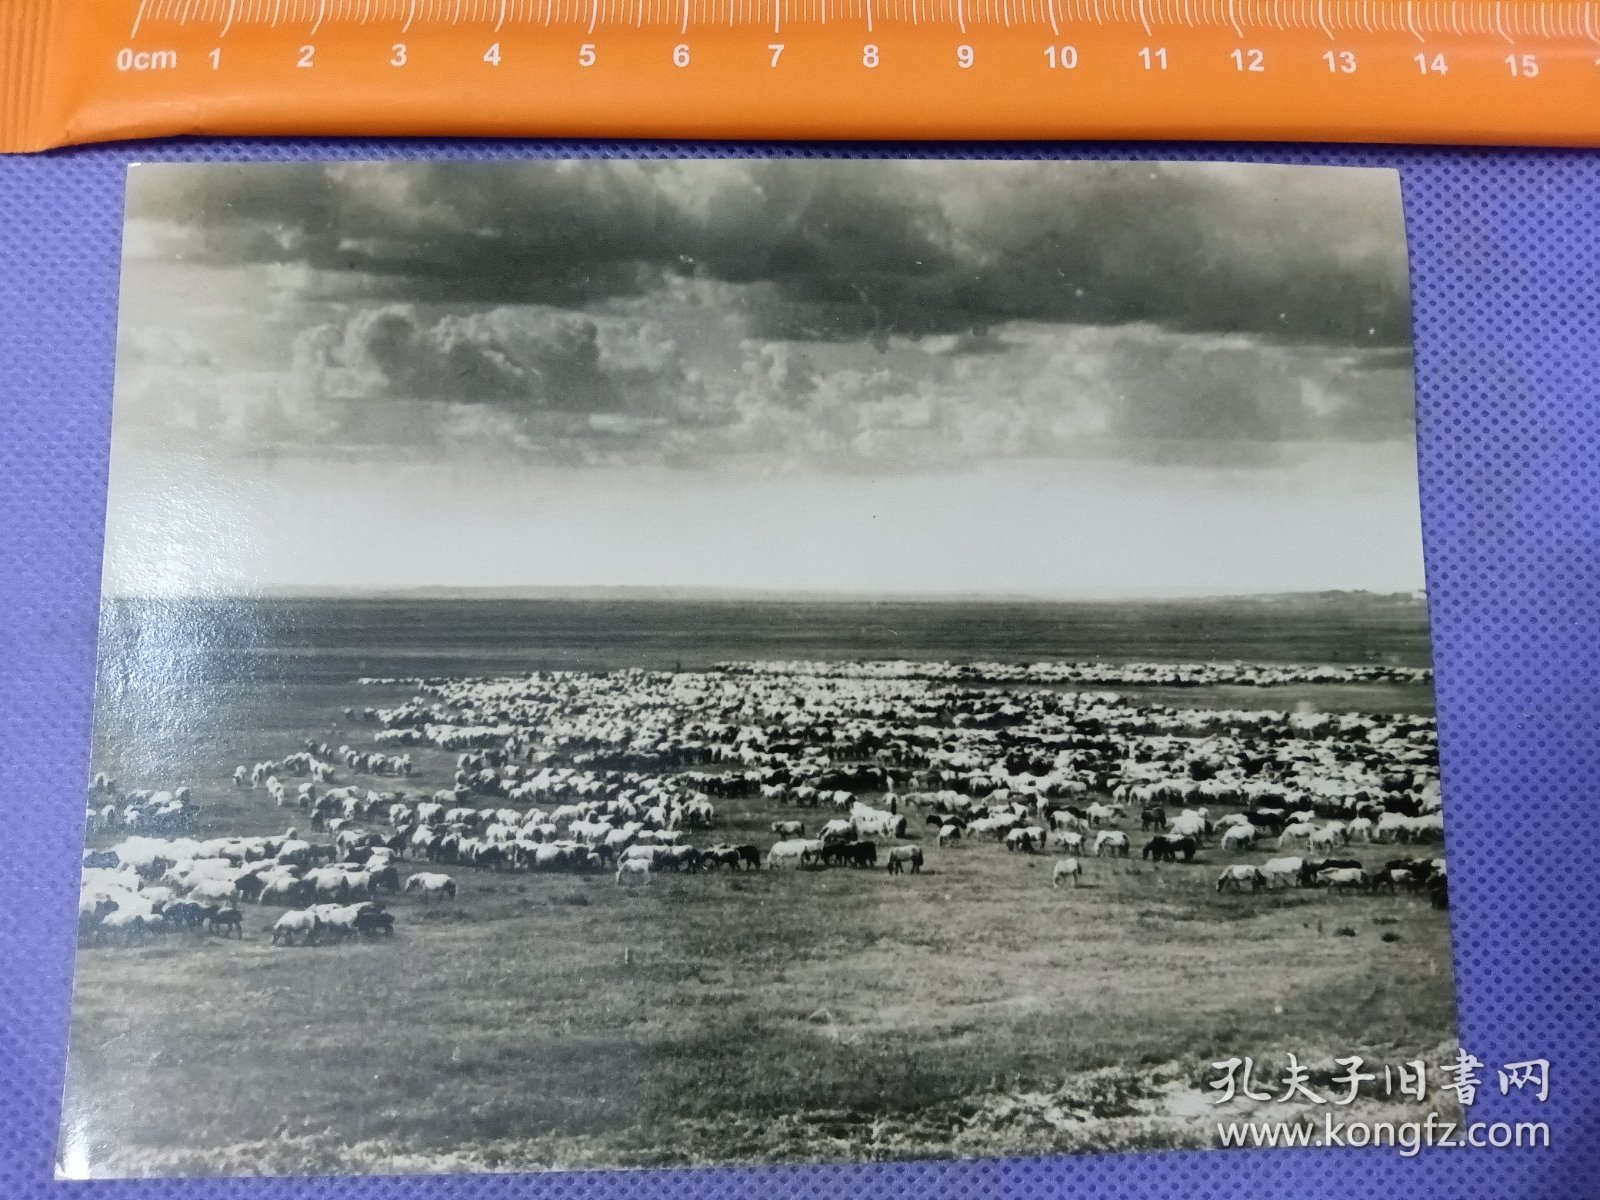 03563 蒙古 草原 牧羊 照片 民国 时期 老照片